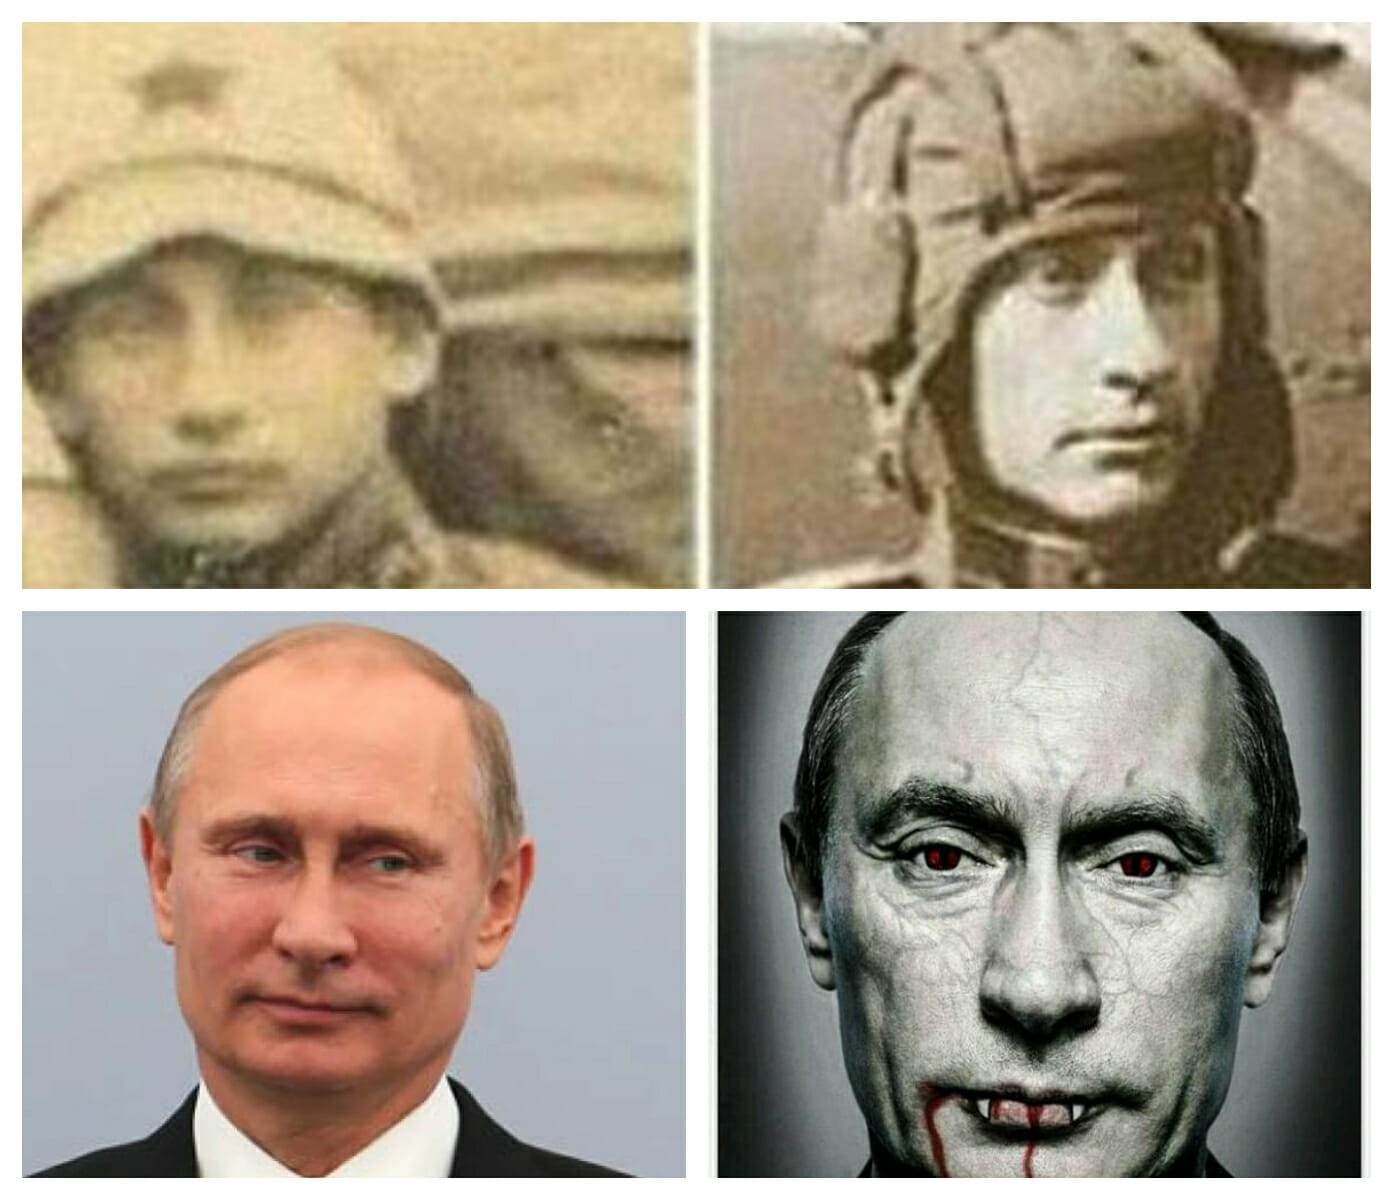 Putin, vampirul nemuritor care vrea să conducă lumea! FOTO Sunt teorii conspiraționiste alimentate de poze din ultima 100 de ani